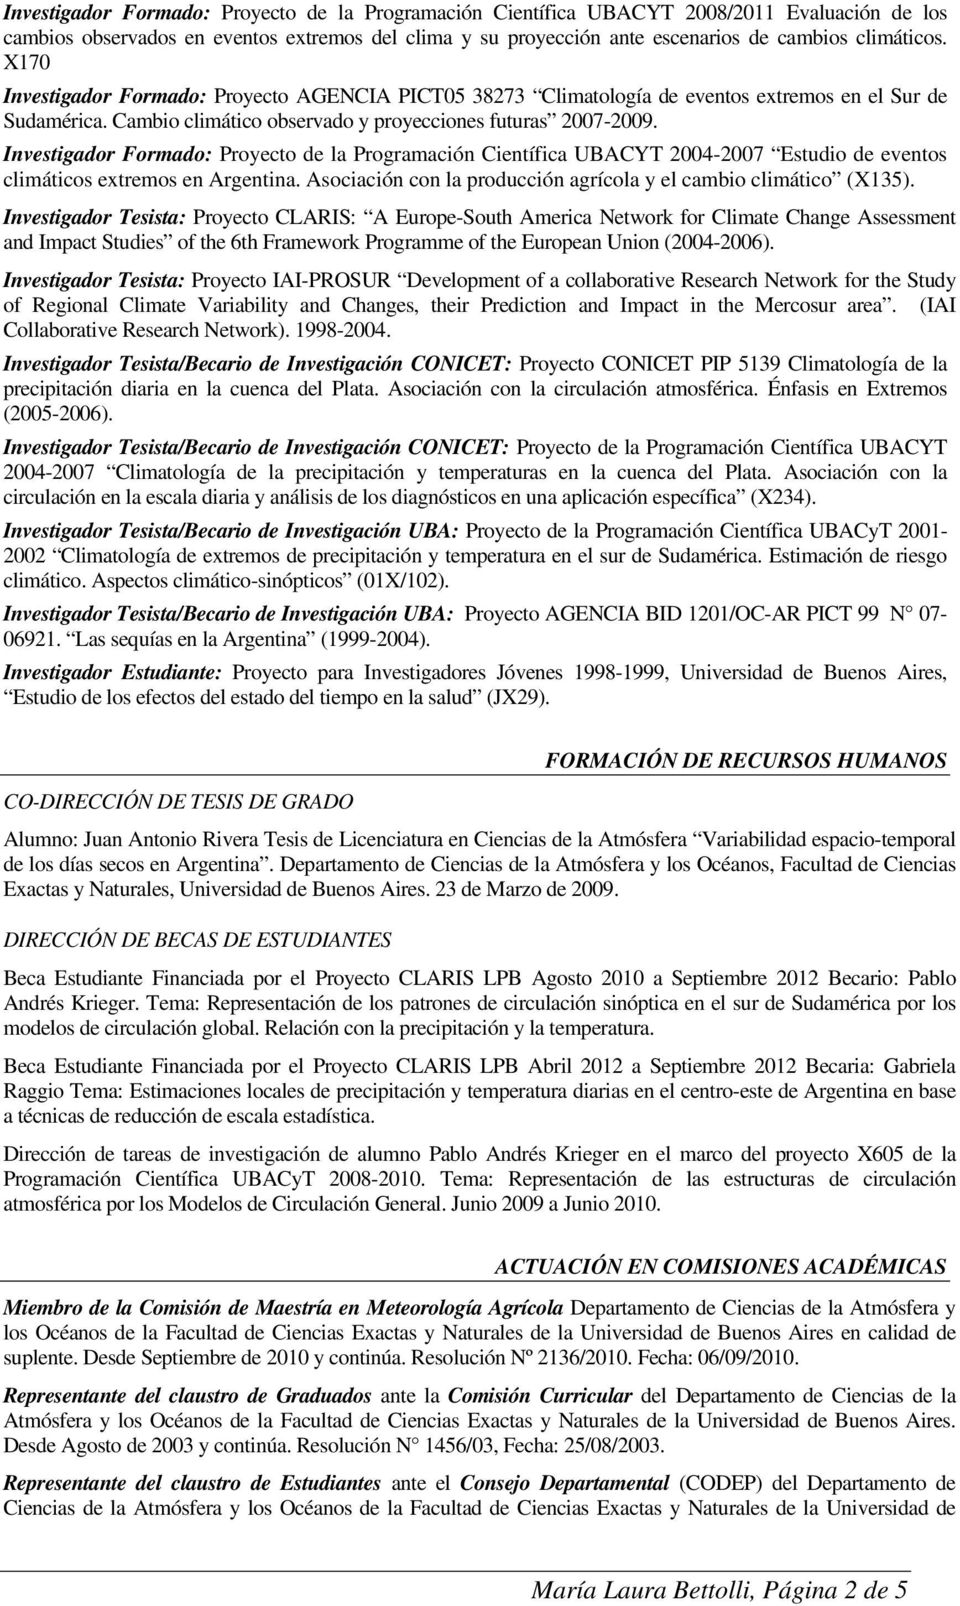 Investigador Formado: Proyecto de la Programación Científica UBACYT 2004-2007 Estudio de eventos climáticos extremos en Argentina. Asociación con la producción agrícola y el cambio climático (X135).